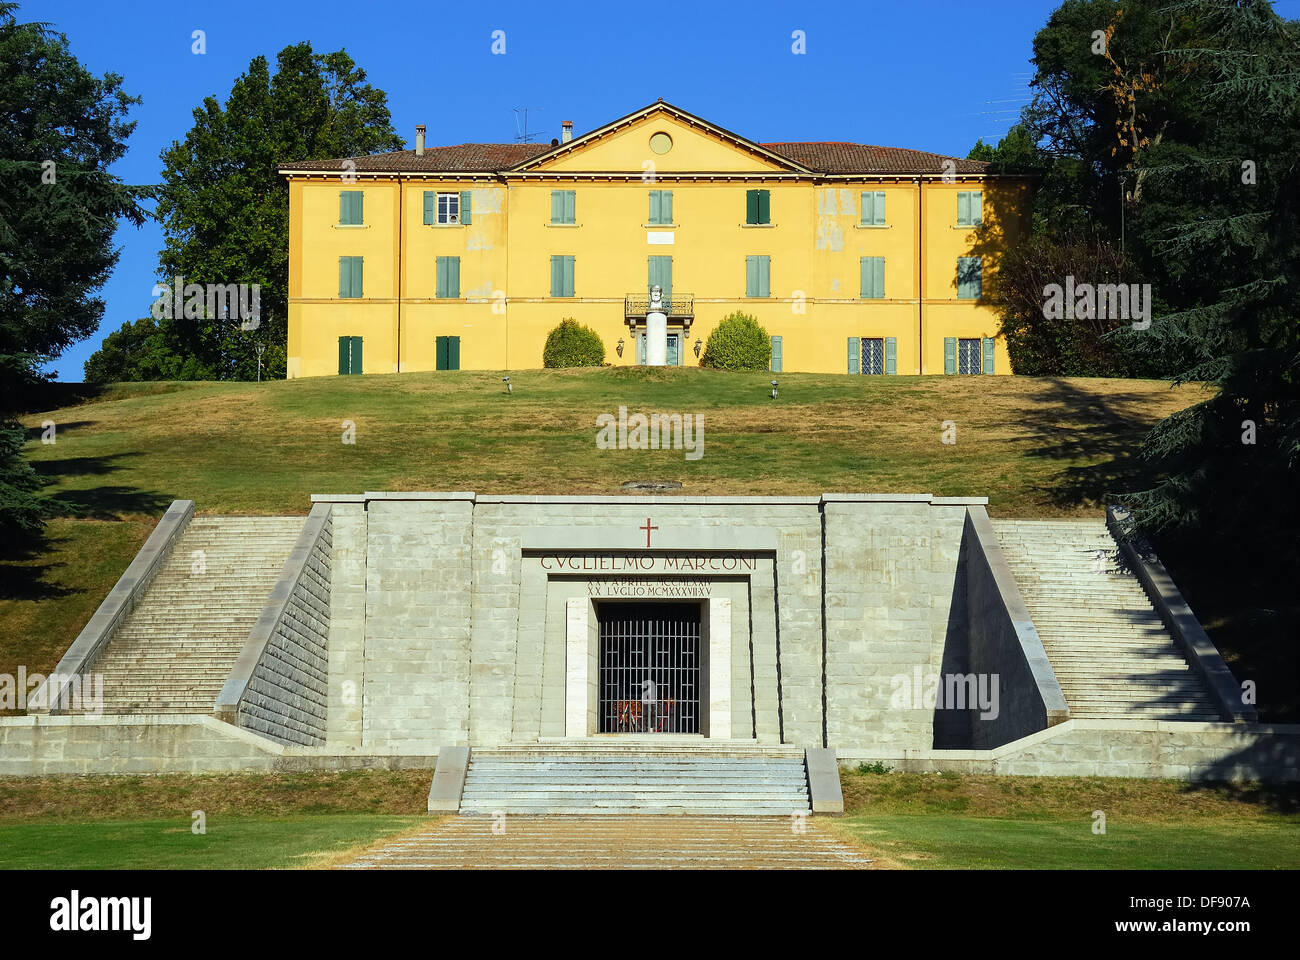 Pontecchio Marconi, Bologne, Italie. La Villa Griffone, Guglielmo Marconi's house et mausolée. Banque D'Images